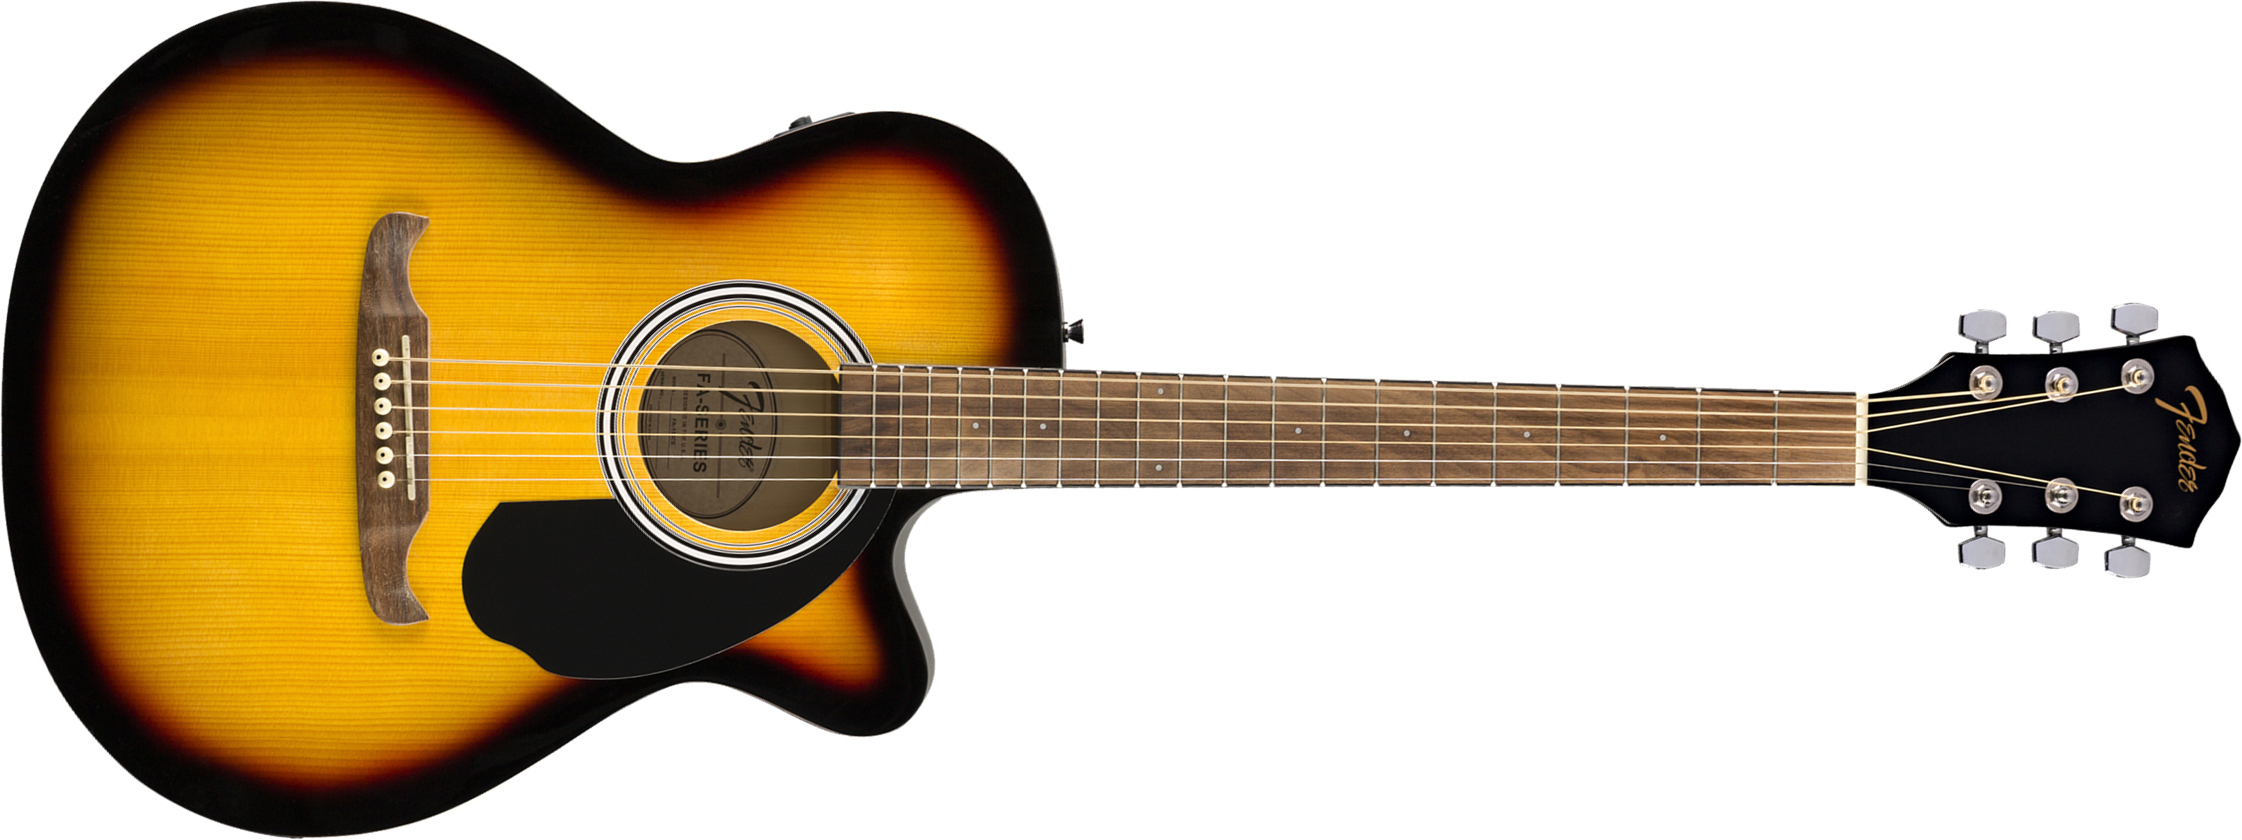 Fender Fa-135ce Concert Cw Epicea Tilleul Wal - Sunburst - Electro acoustic guitar - Main picture